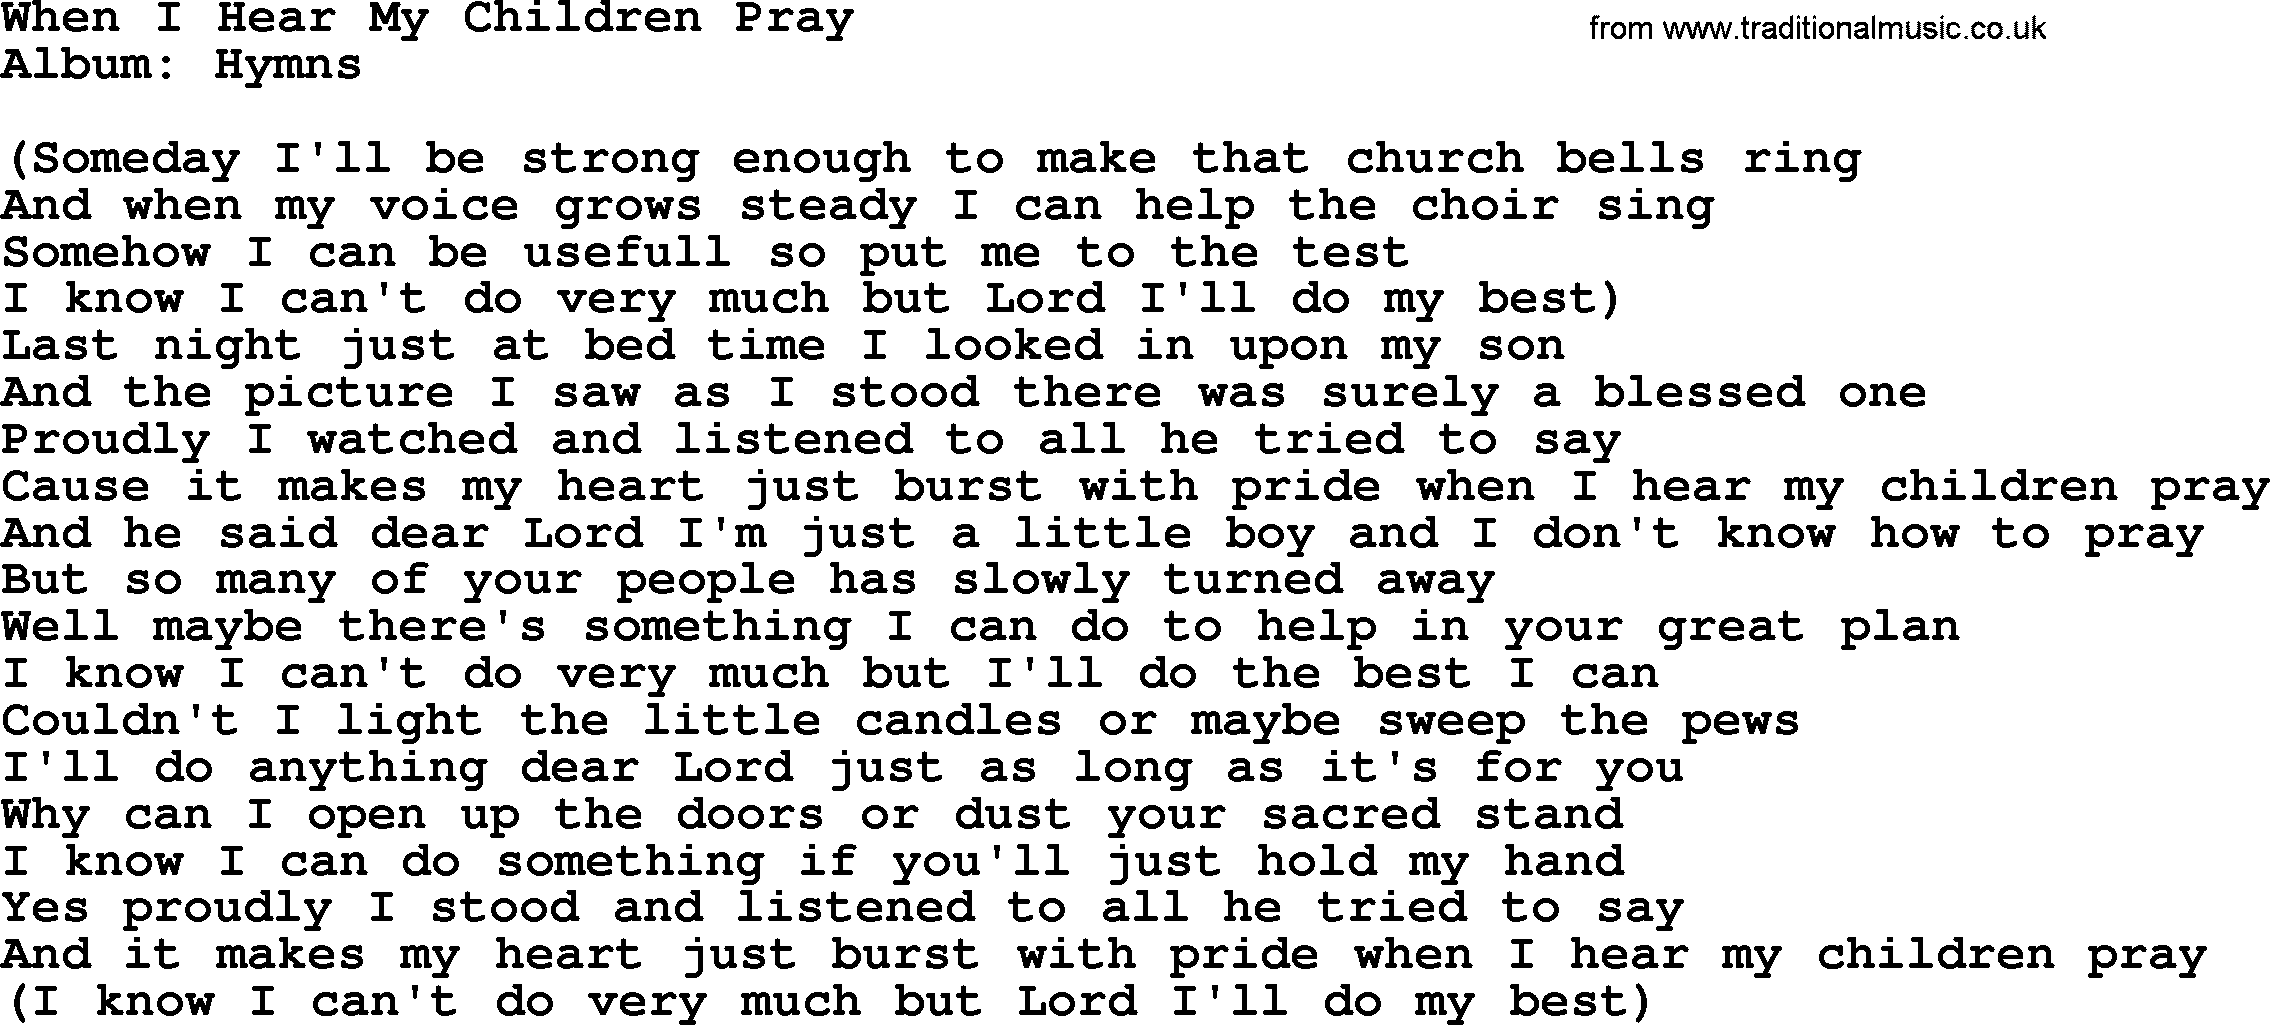 Loretta Lynn song: When I Hear My Children Pray lyrics